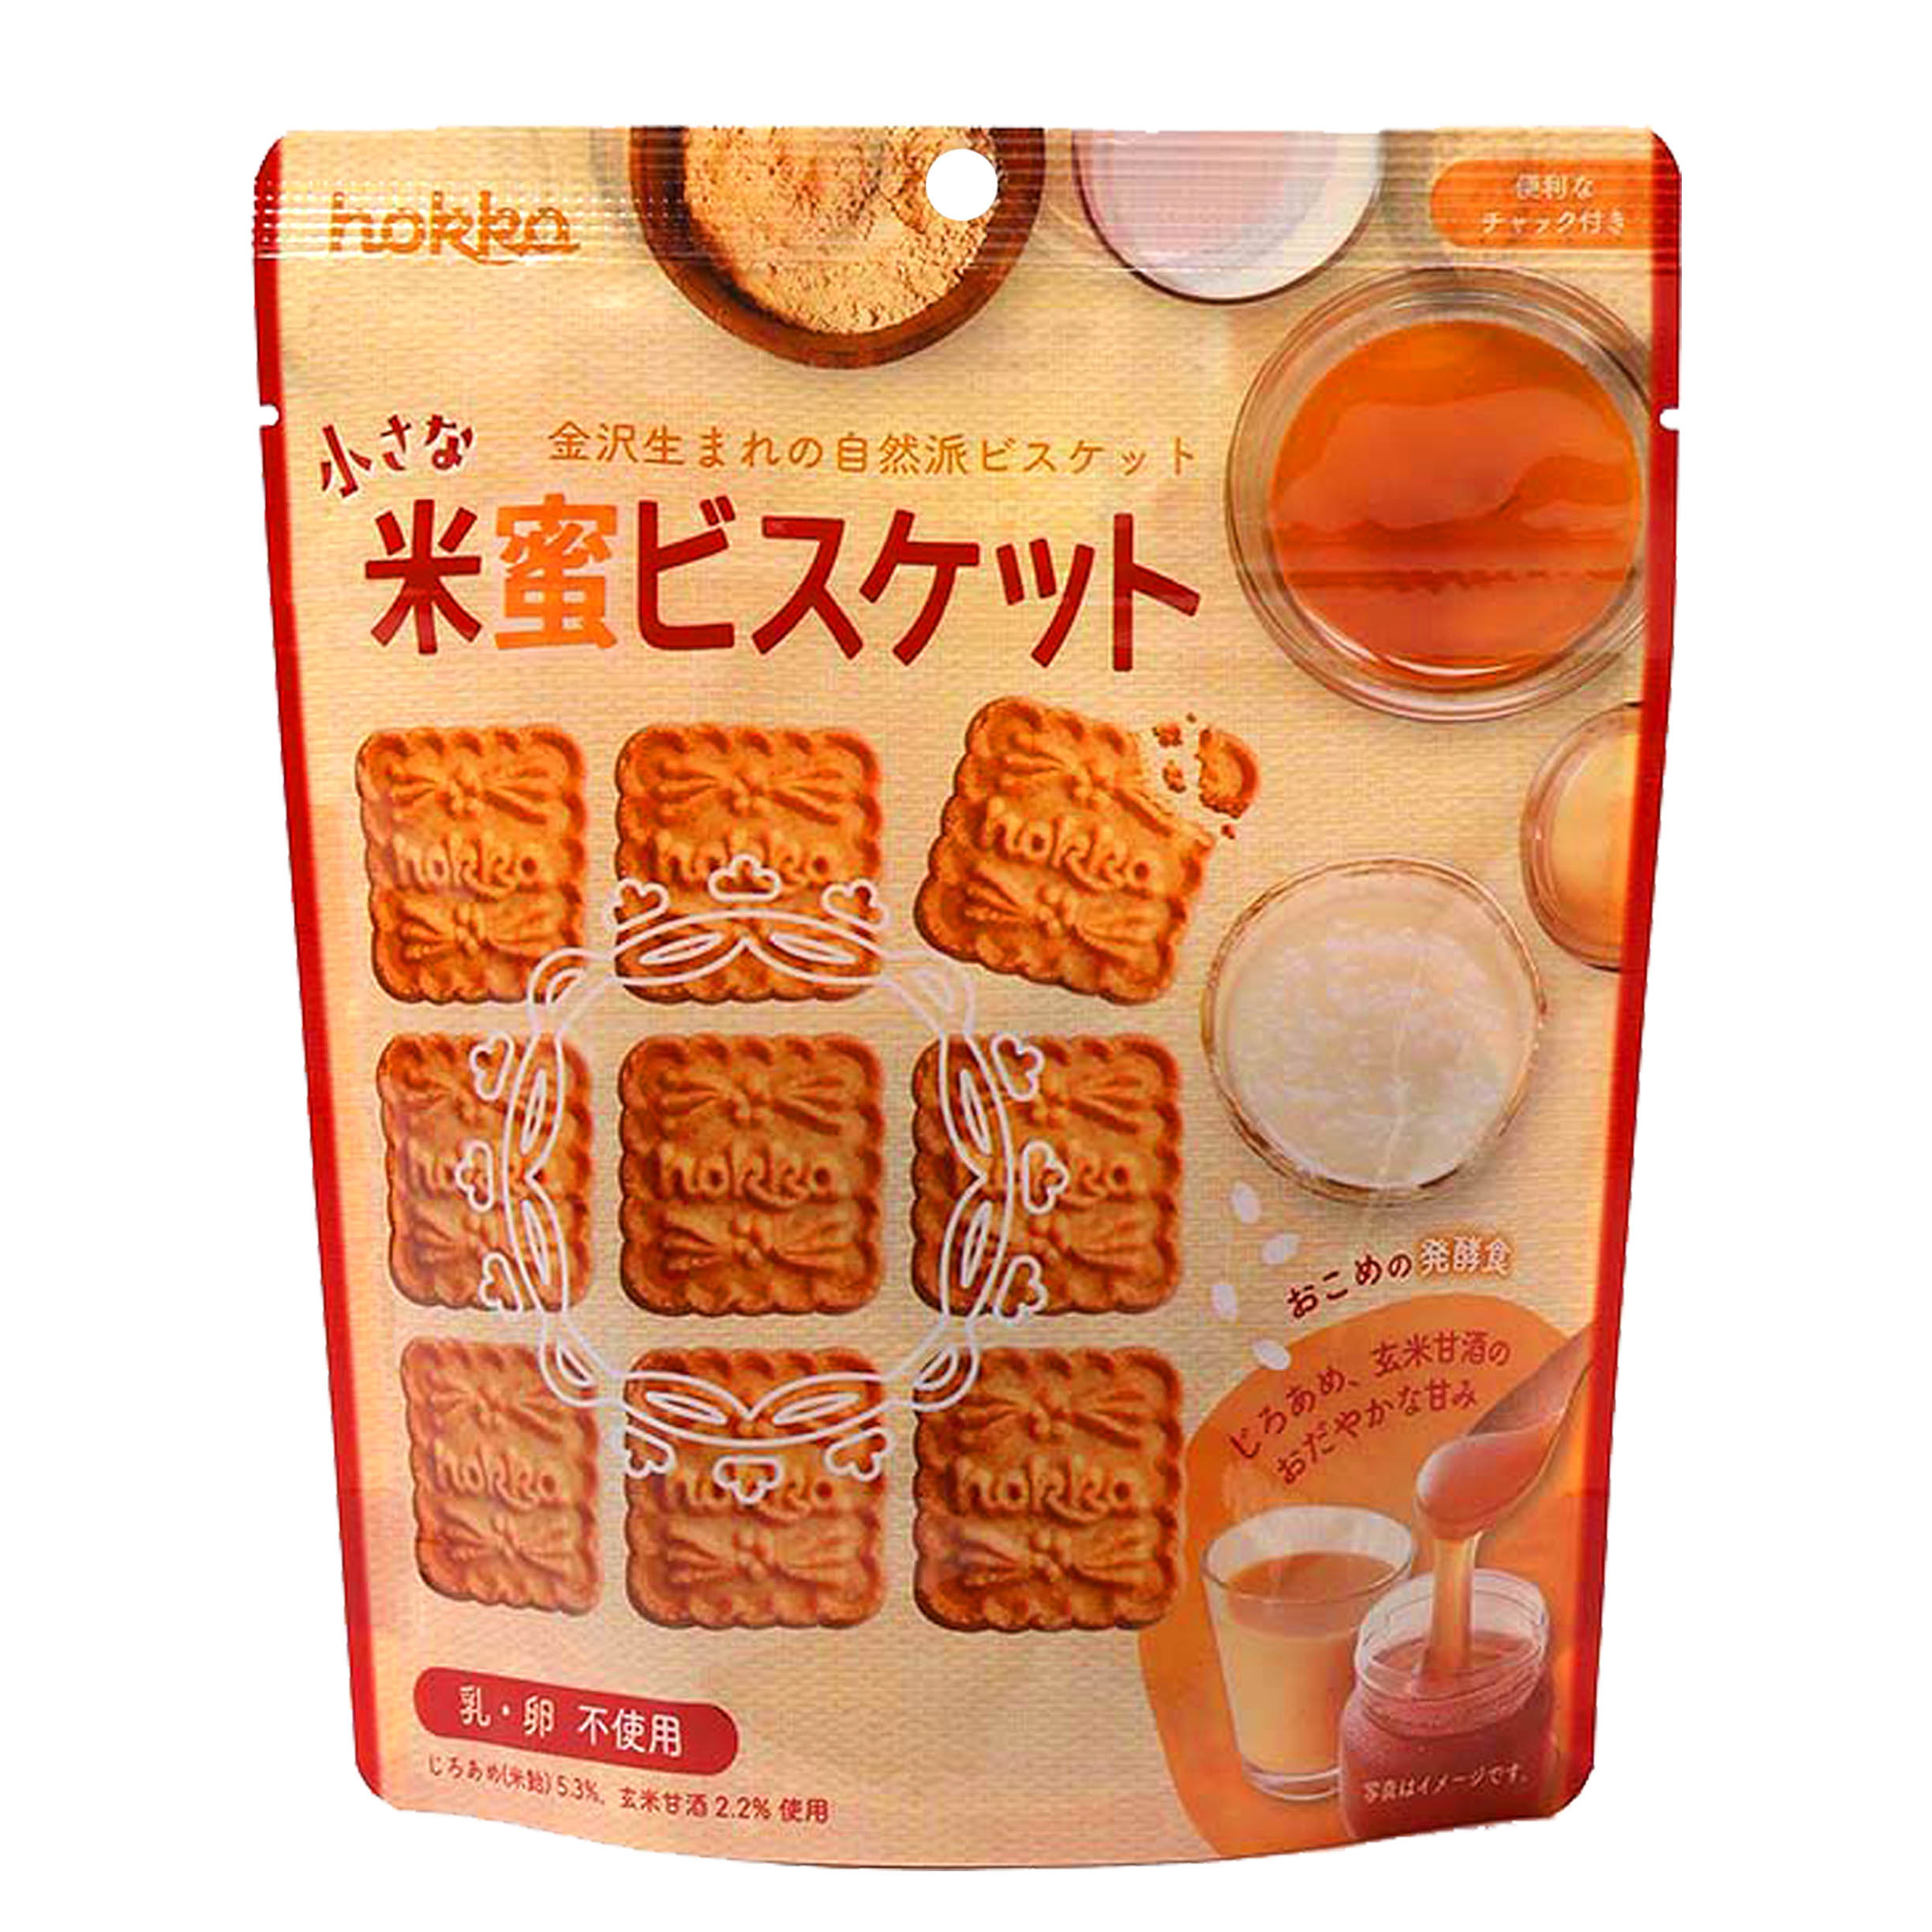 米蜜餅乾 90g-小さな米蜜ビスケット 北陸 hokkaのビスケット 日本進口製造